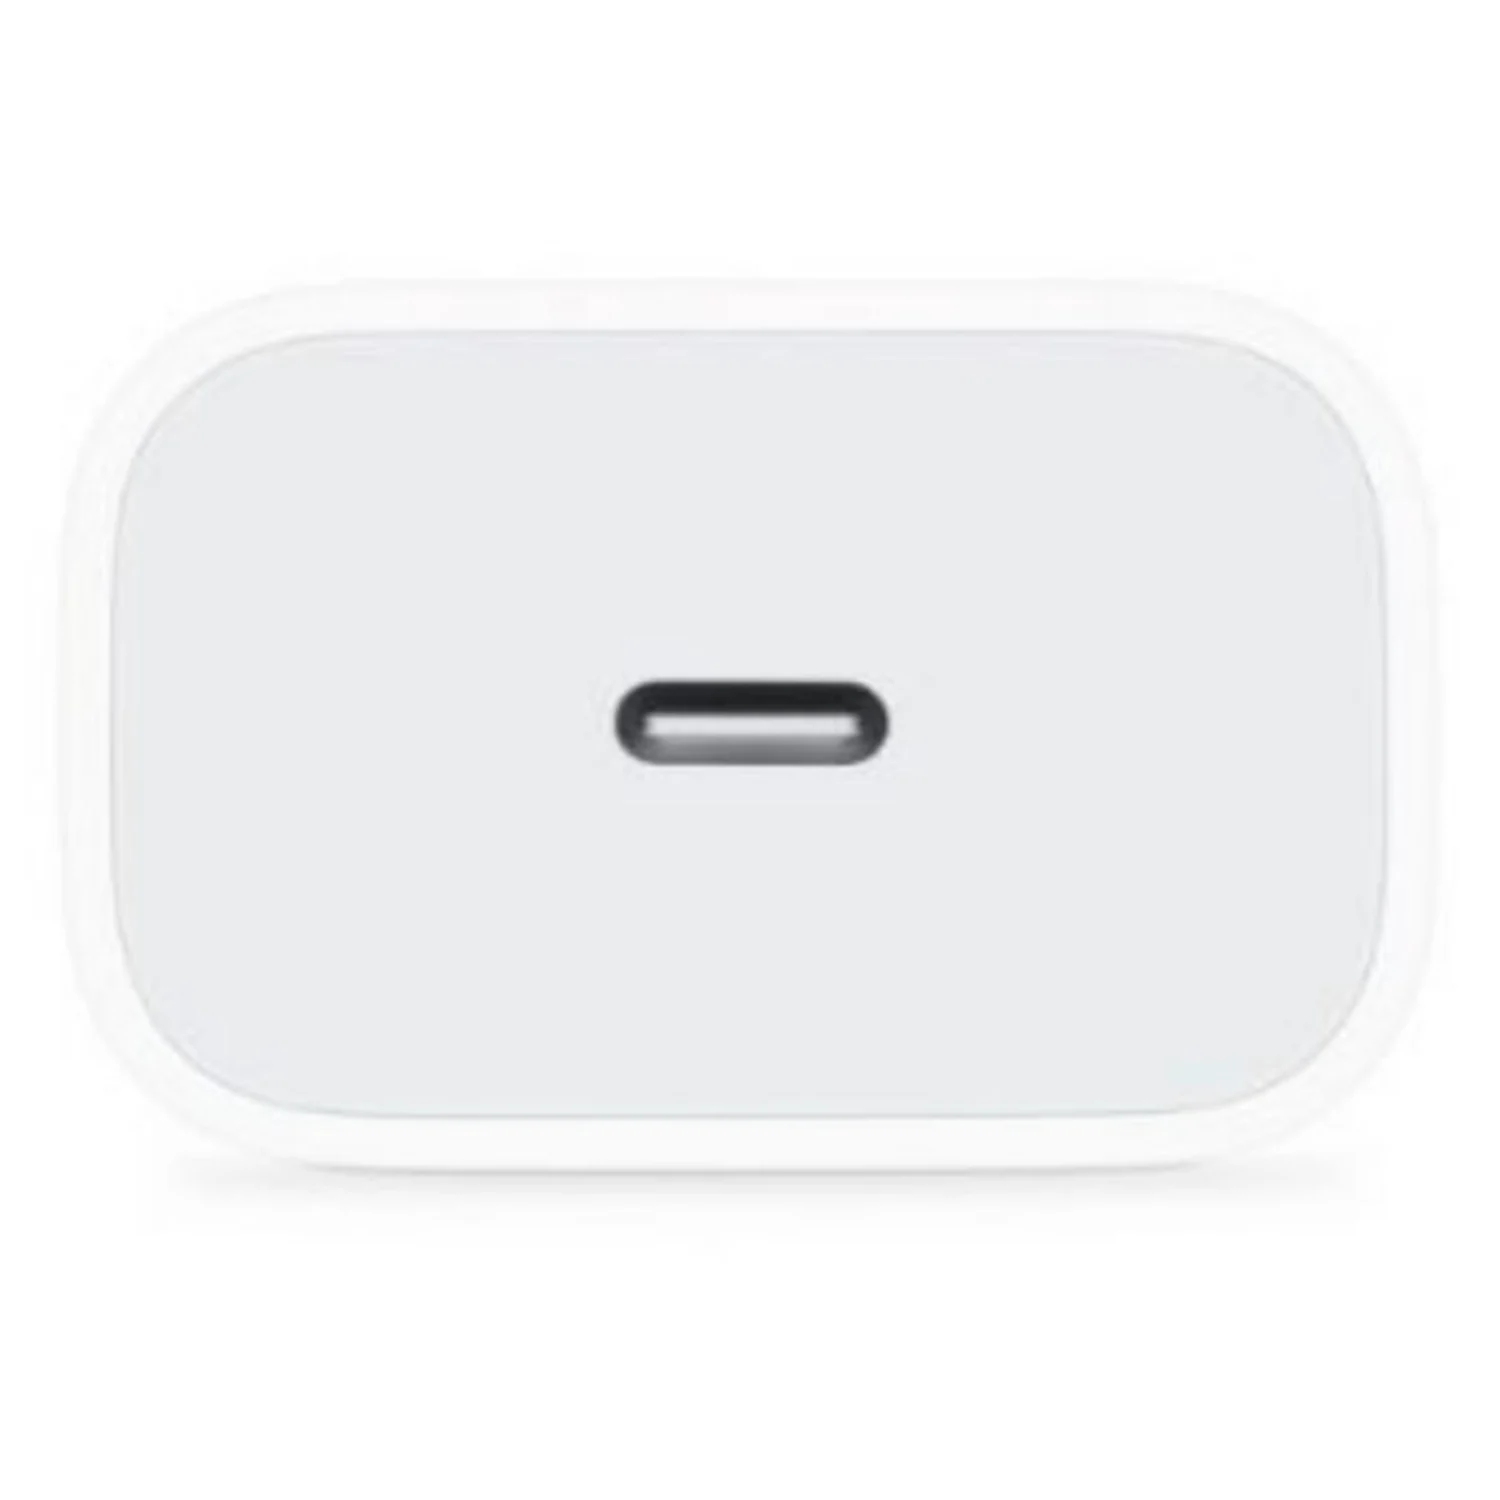 Carregador para Tomada Apple USB-C 20W - Branco (MHJ83ZM/A)